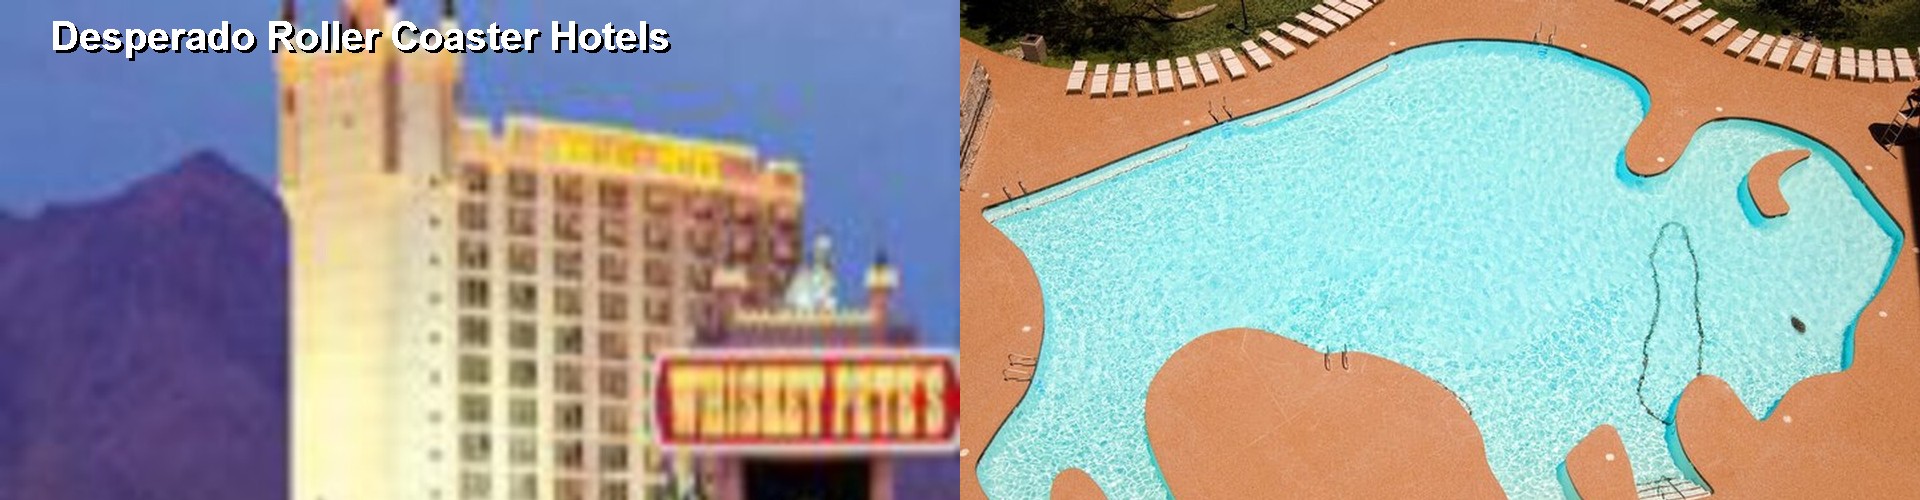 2 Best Hotels near Desperado Roller Coaster